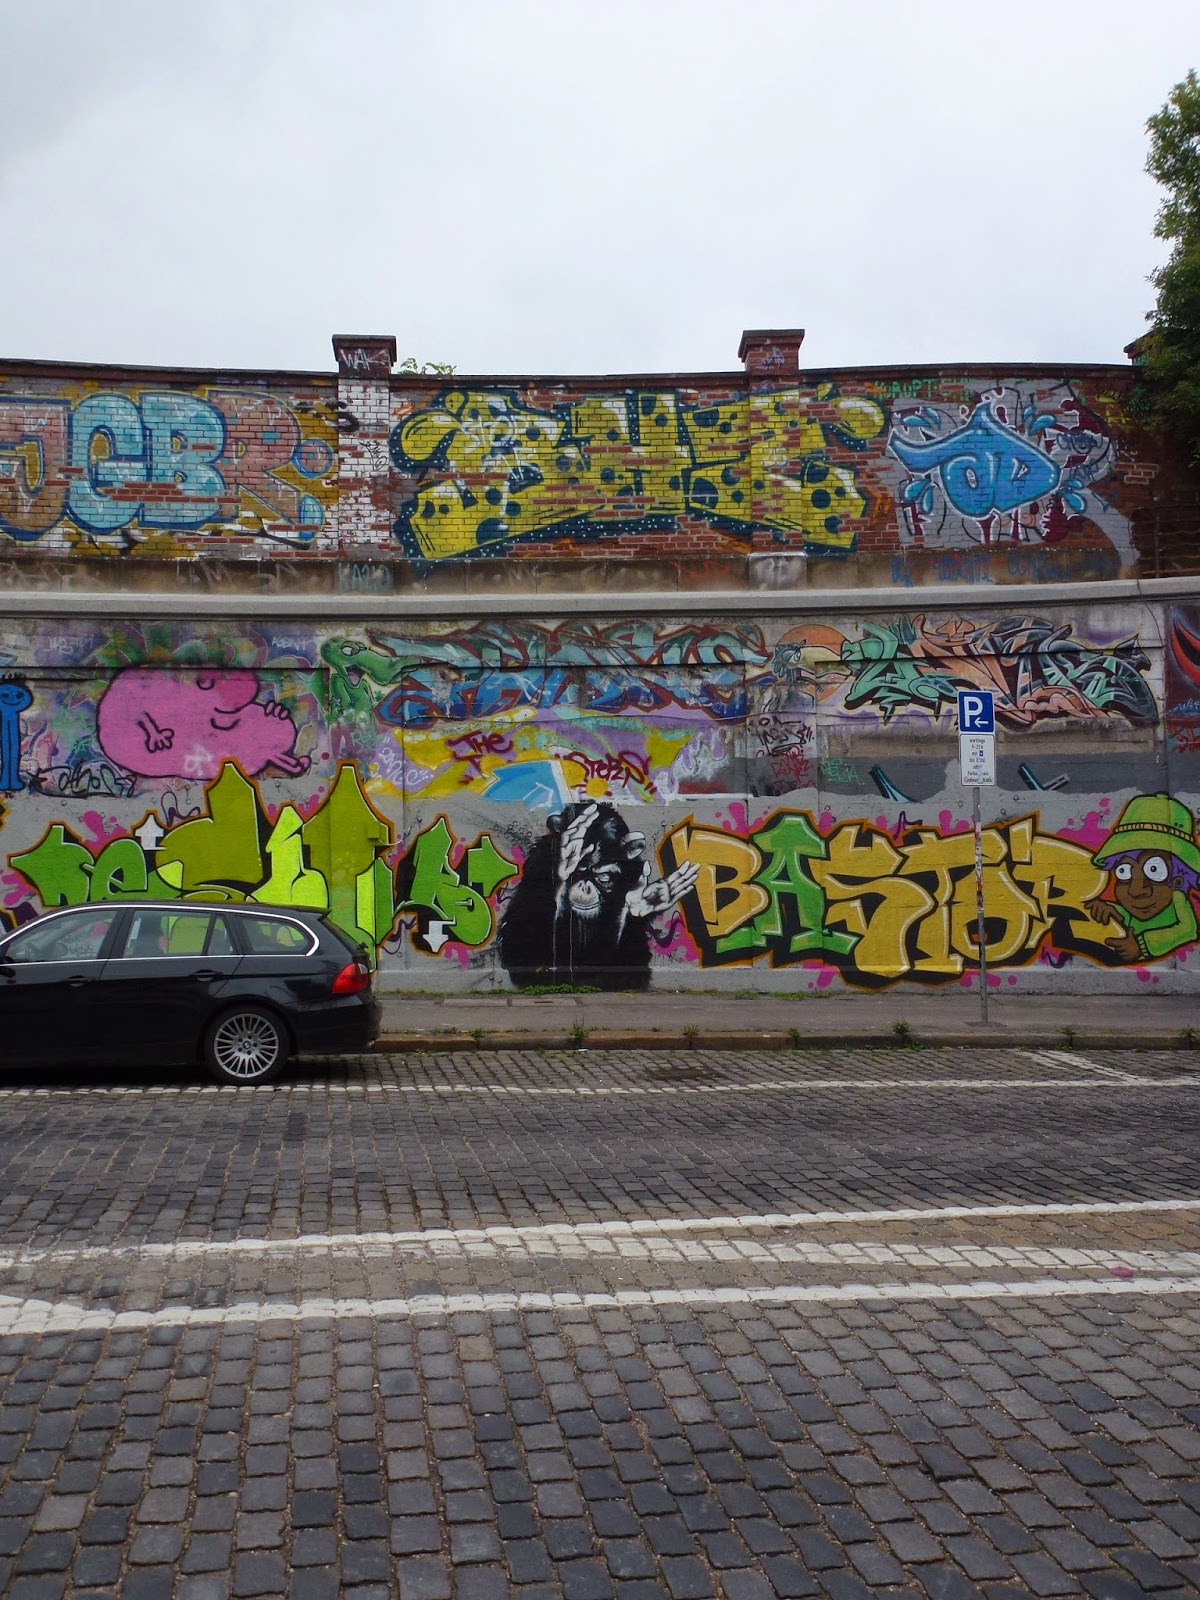 Graffiti, Streetart, Urbanart